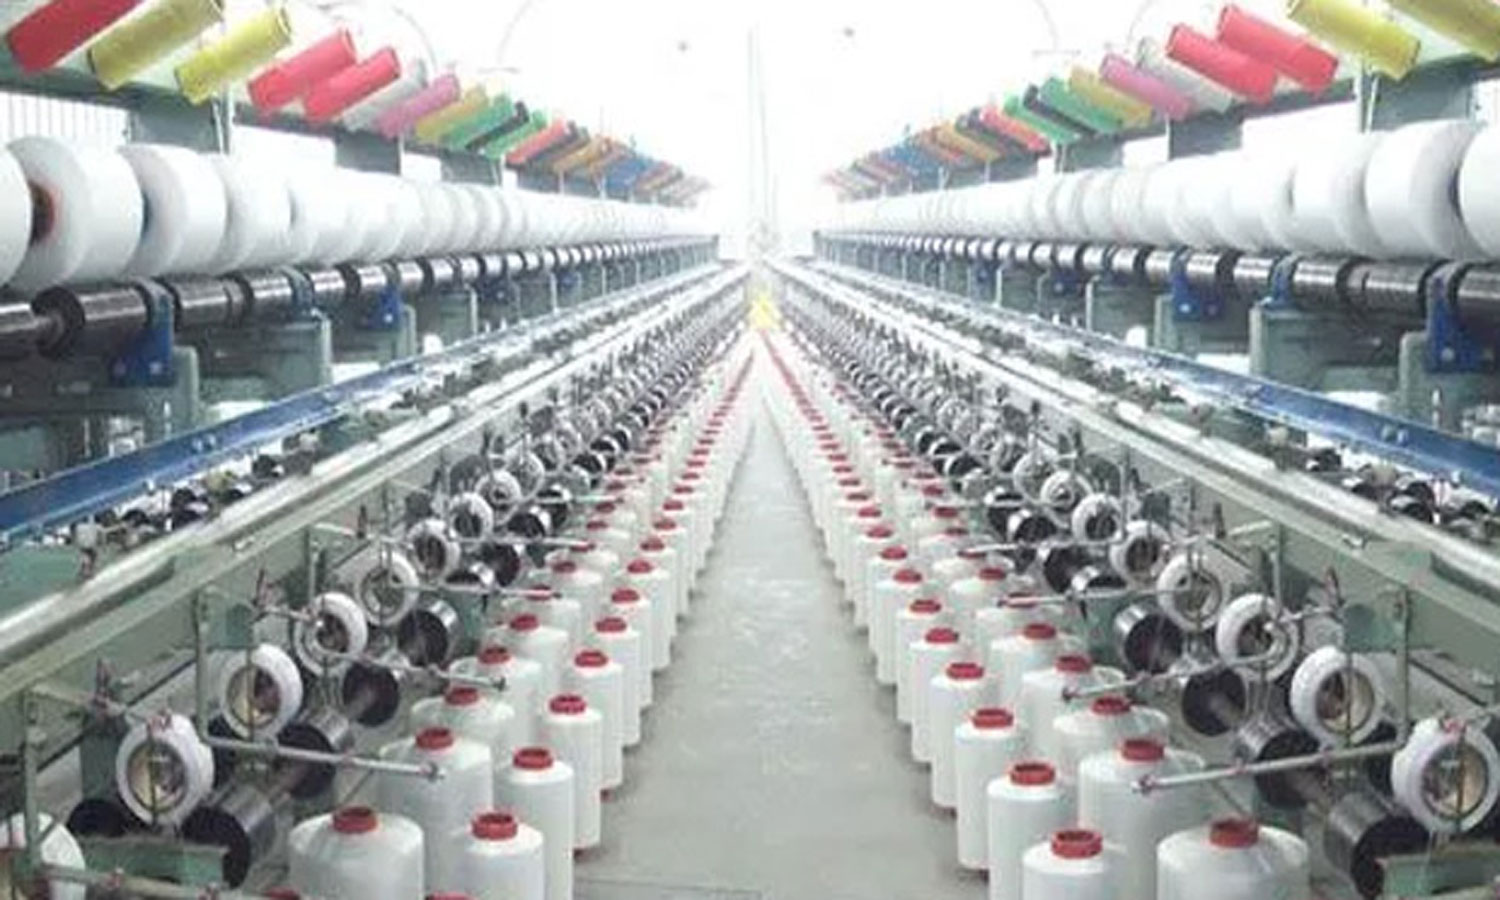 நூல் விலை கிலோவுக்கு ரூ.30 குறைந்தது- ஜவுளி உற்பத்தியாளர்கள் மகிழ்ச்சி |  Textile manufacturers happy yarn price dropped